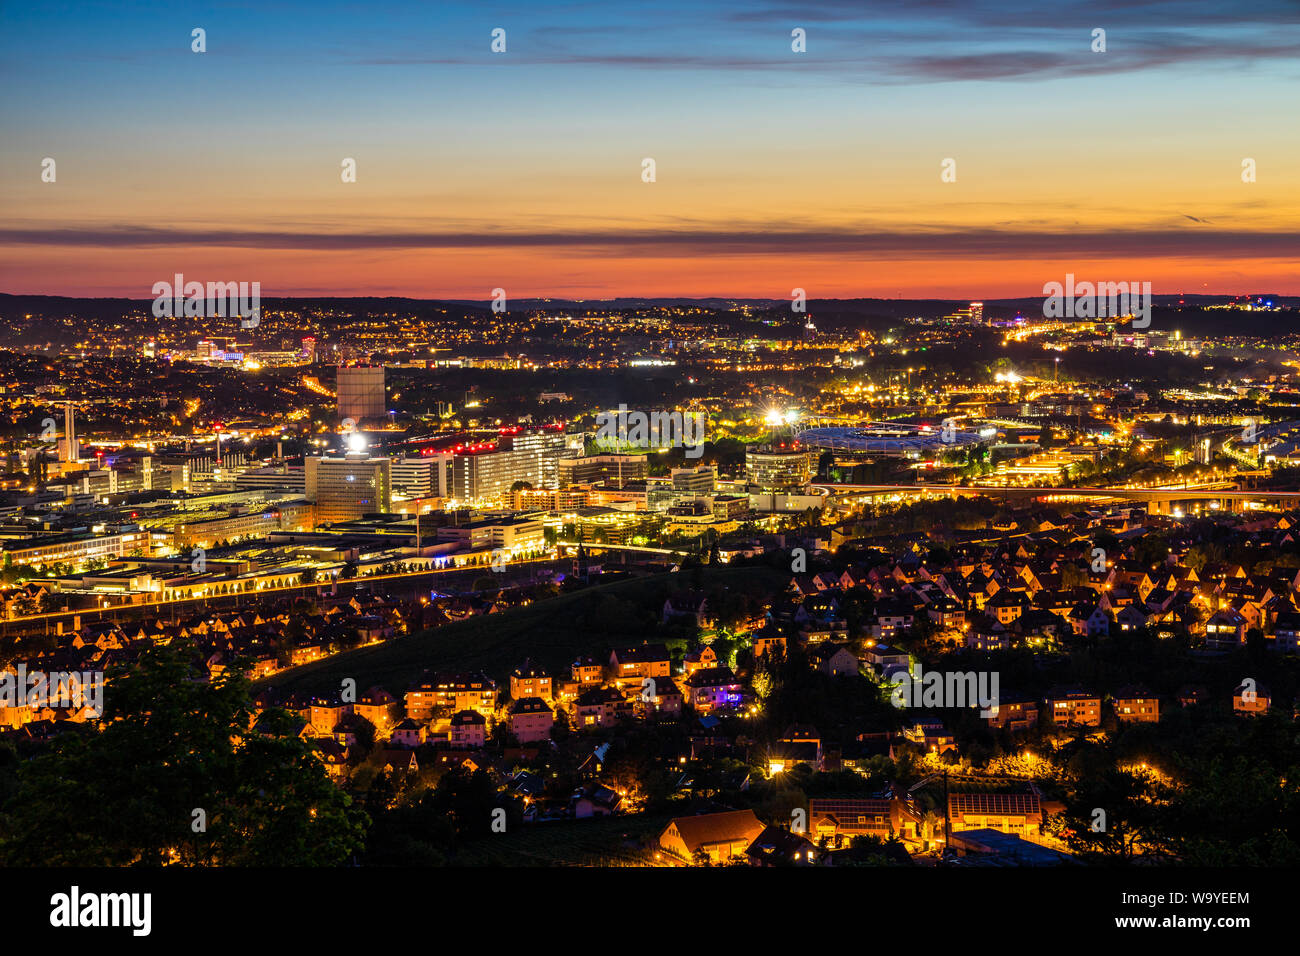 In Germania, di notte le luci del famoso quartiere urbano bad canstatt stadium del centro della città di Stoccarda nella magica atmosfera di crepuscolo Foto Stock